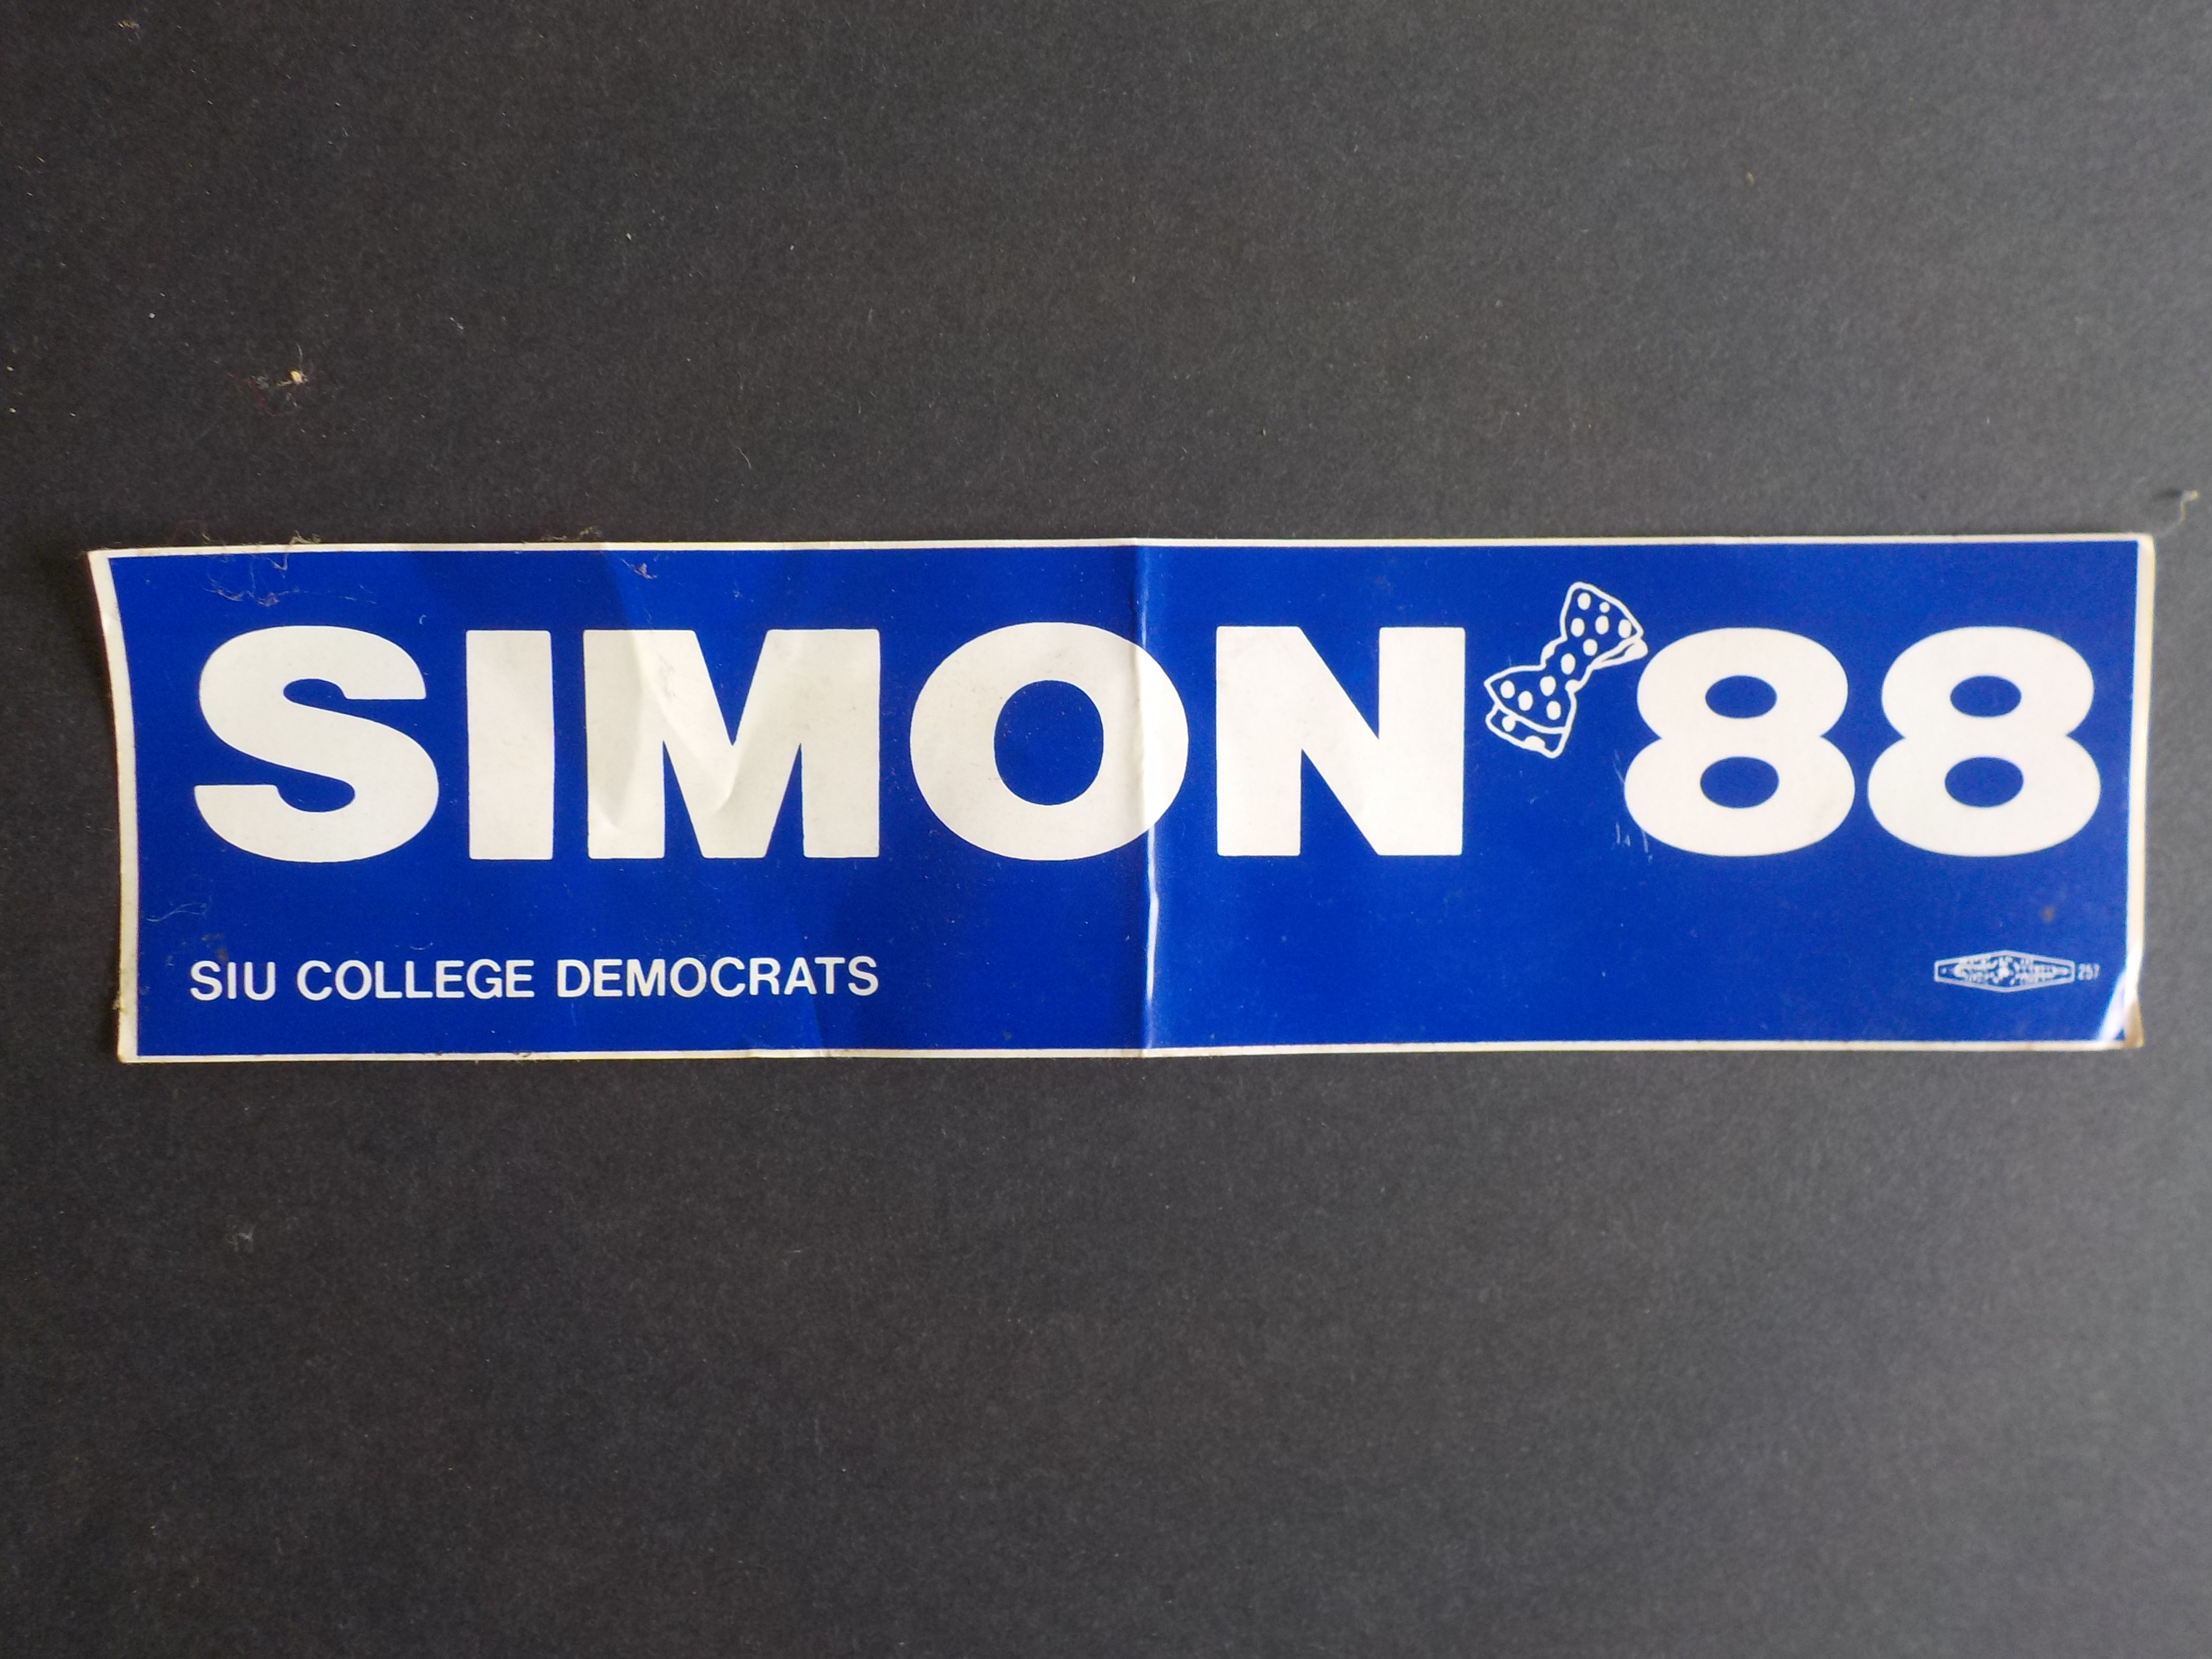 Simon '88